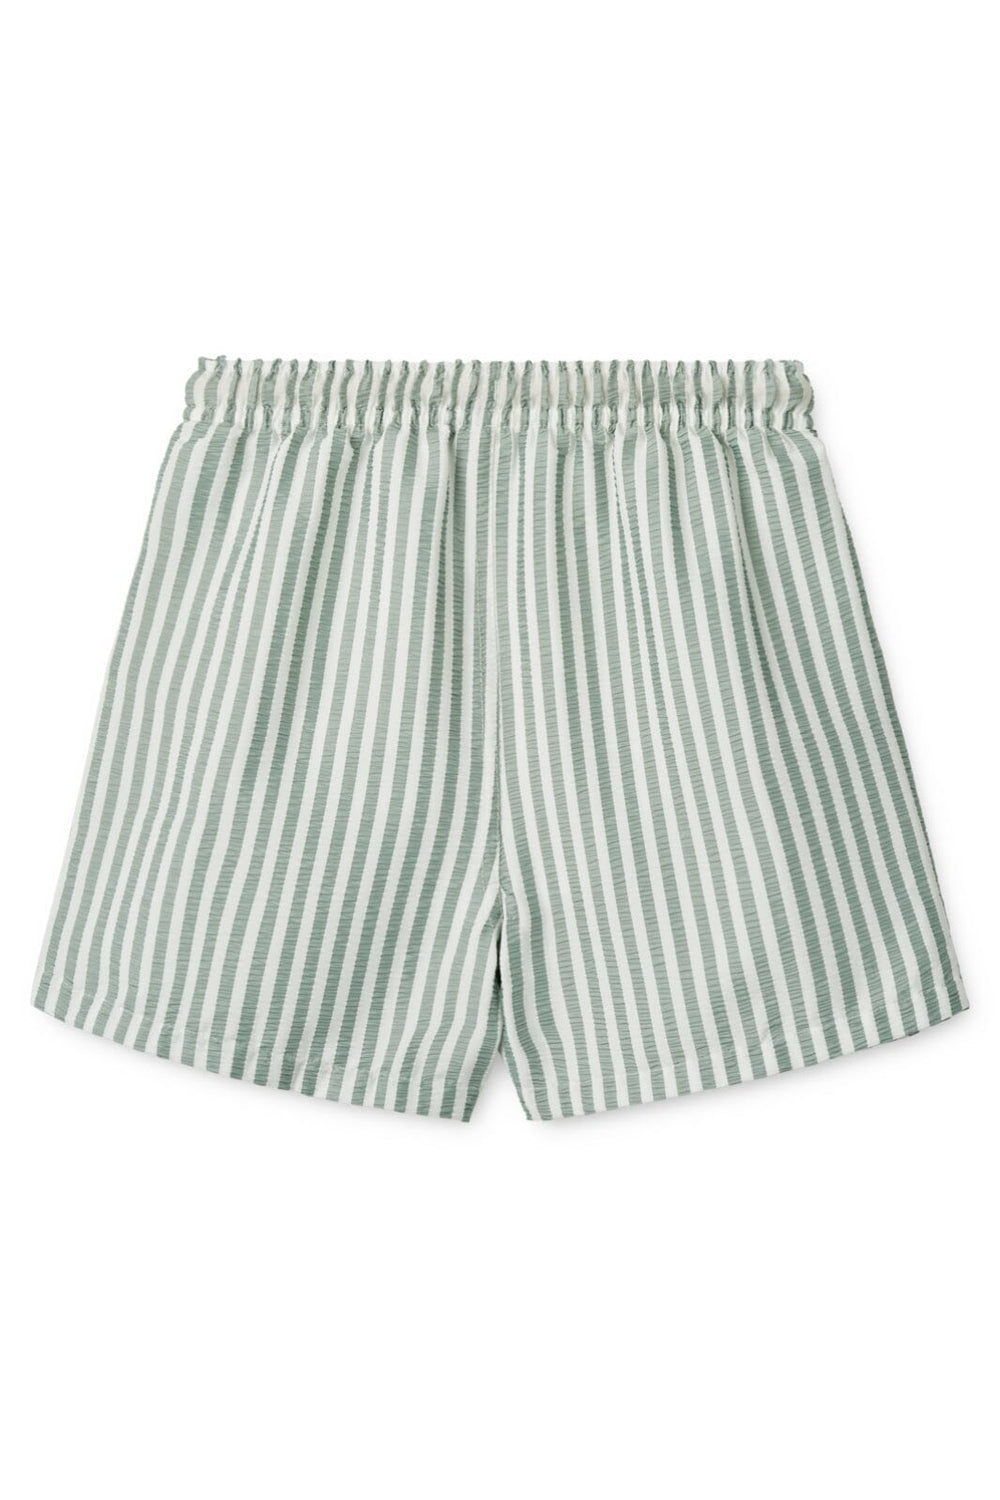 Liewood - Duke Stripe Board Shorts - Stripe Peppermint / Crisp White Badebukser 